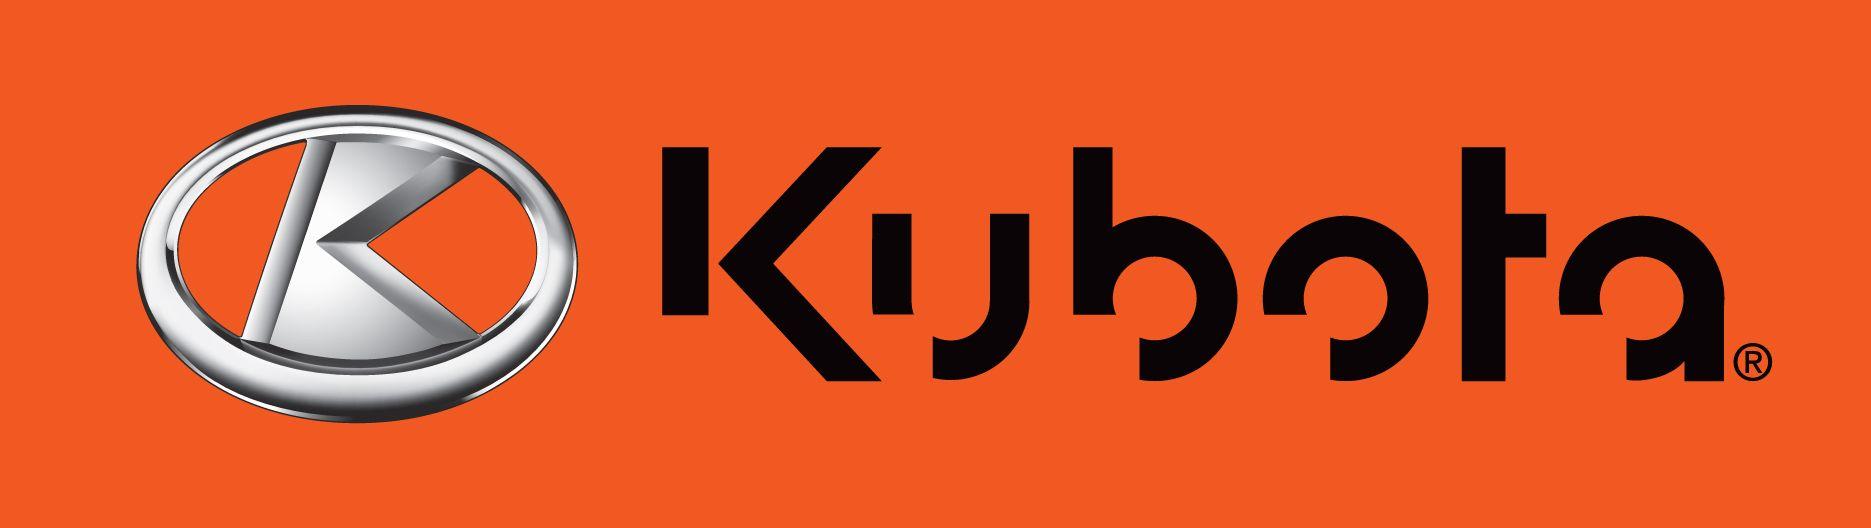 Kubota Logo - The new Kubota logo!. Kubota. Kubota, Tractors, Logos